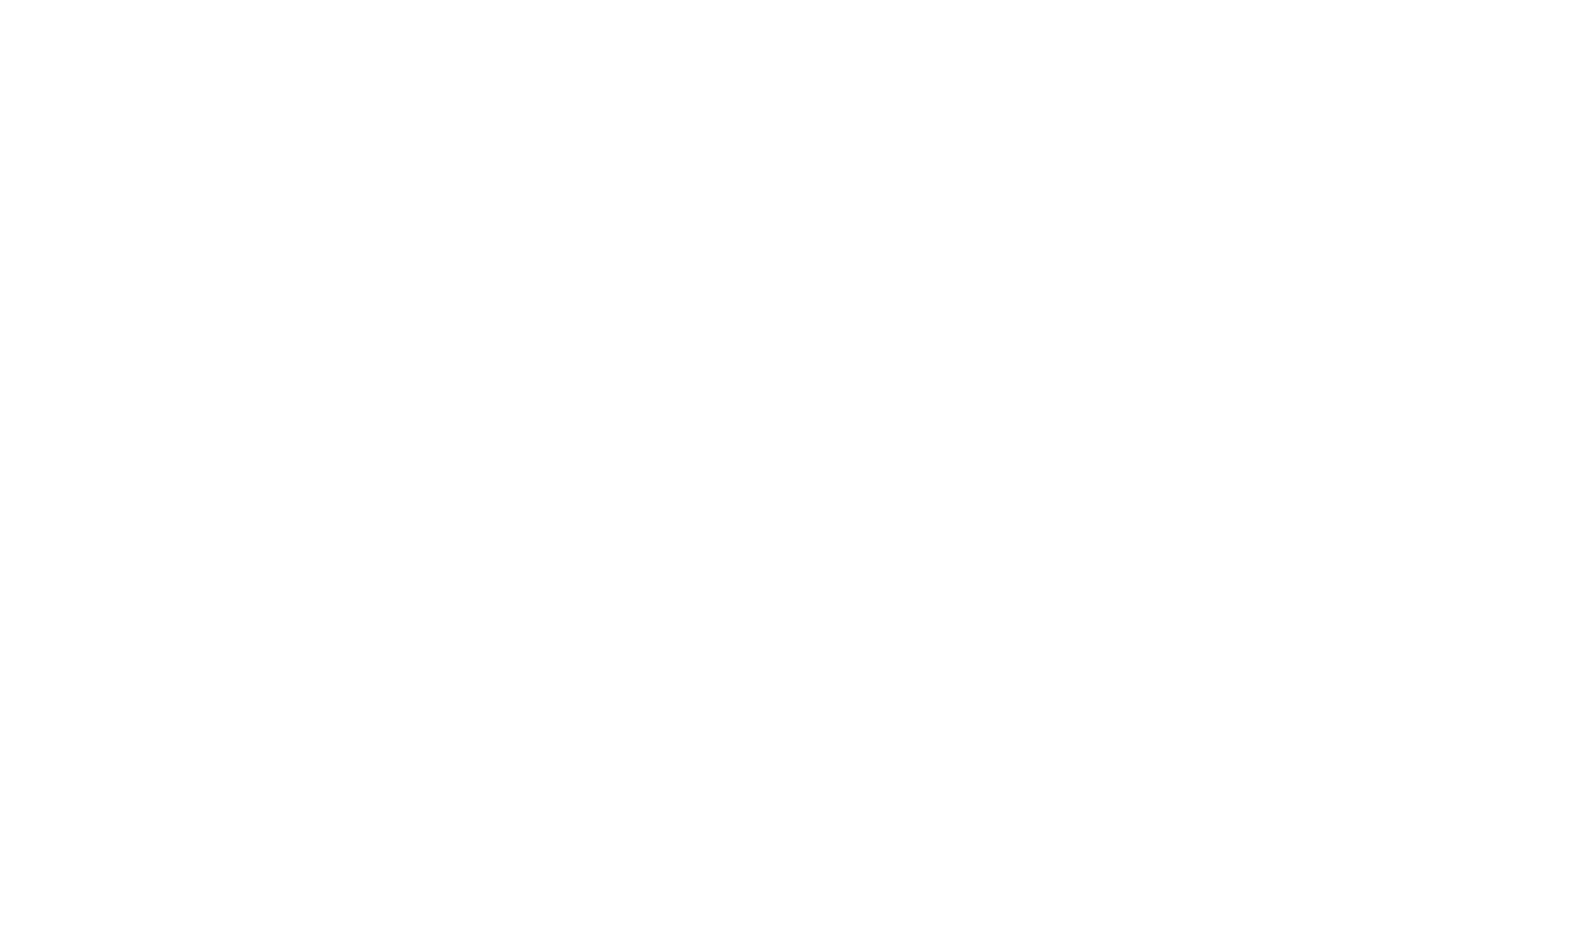 Joby Aviation logo pour fonds sombres (PNG transparent)